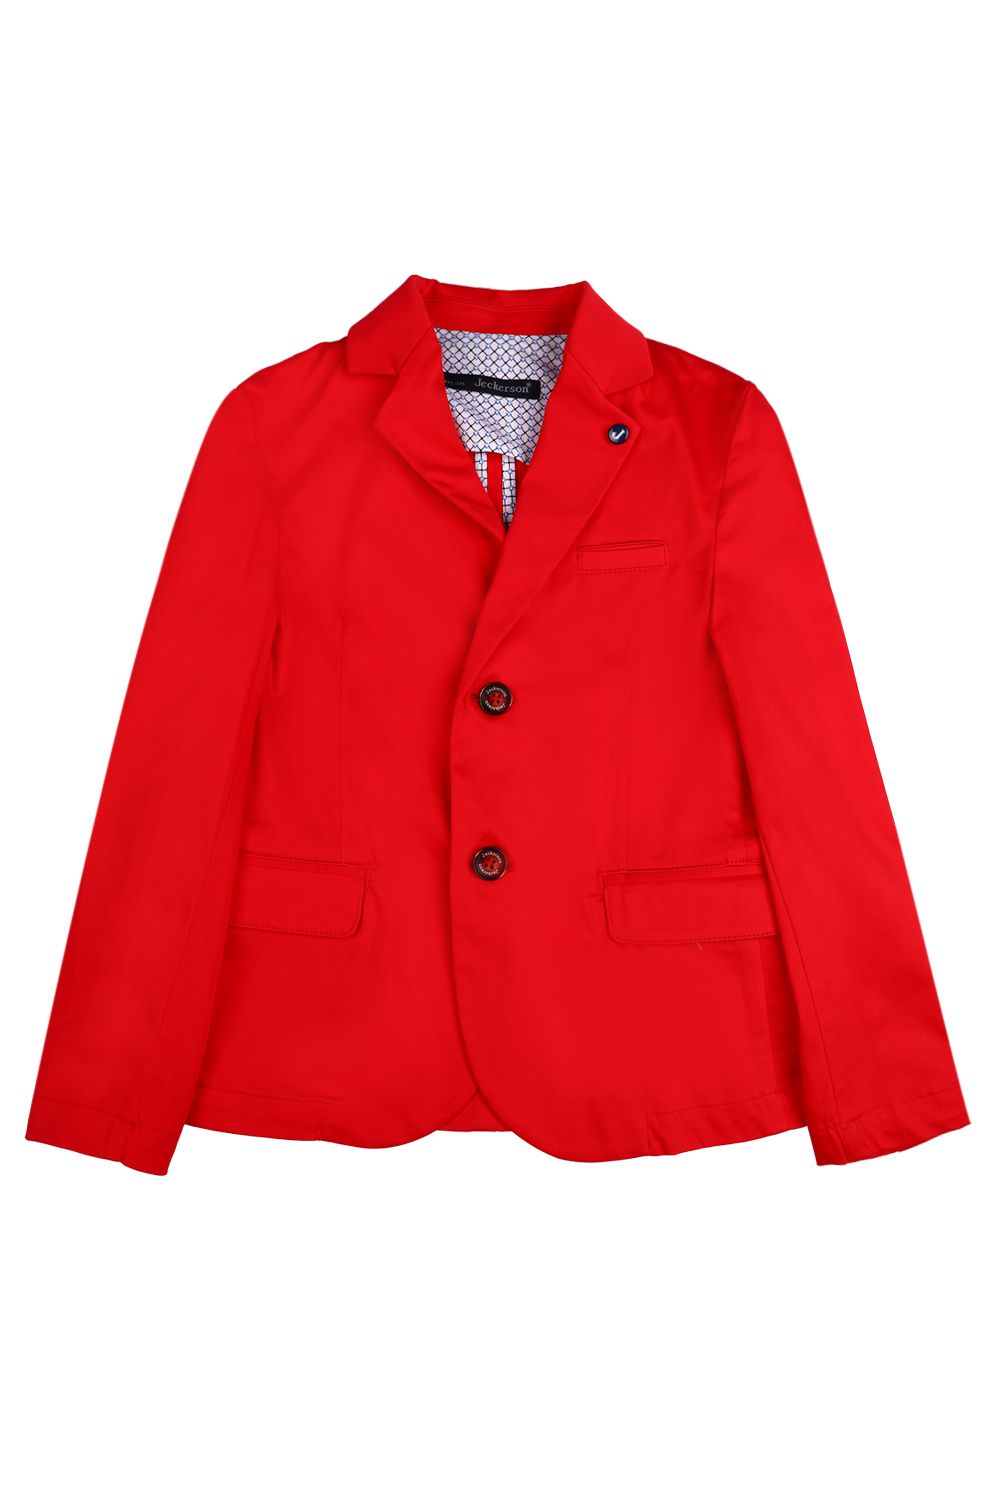 Пиджак Jeckerson, размер 128, цвет красный